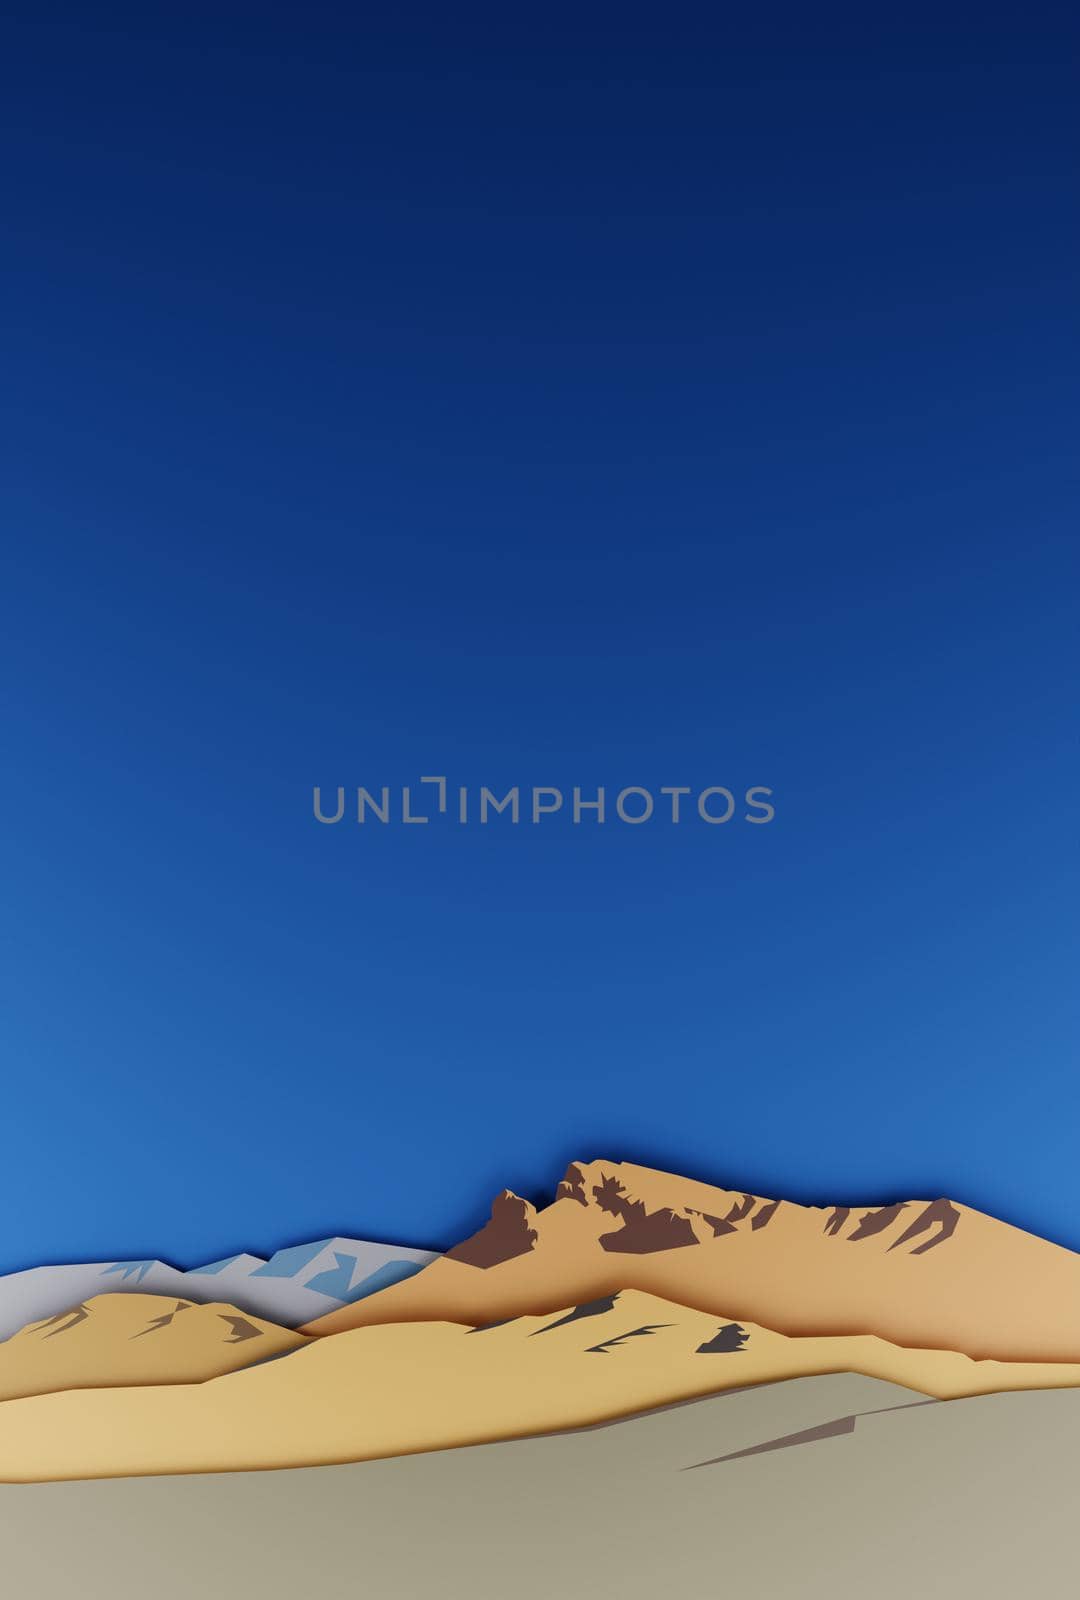 Desert mountains with blue sky. Papercut design, digital render. by hernan_hyper